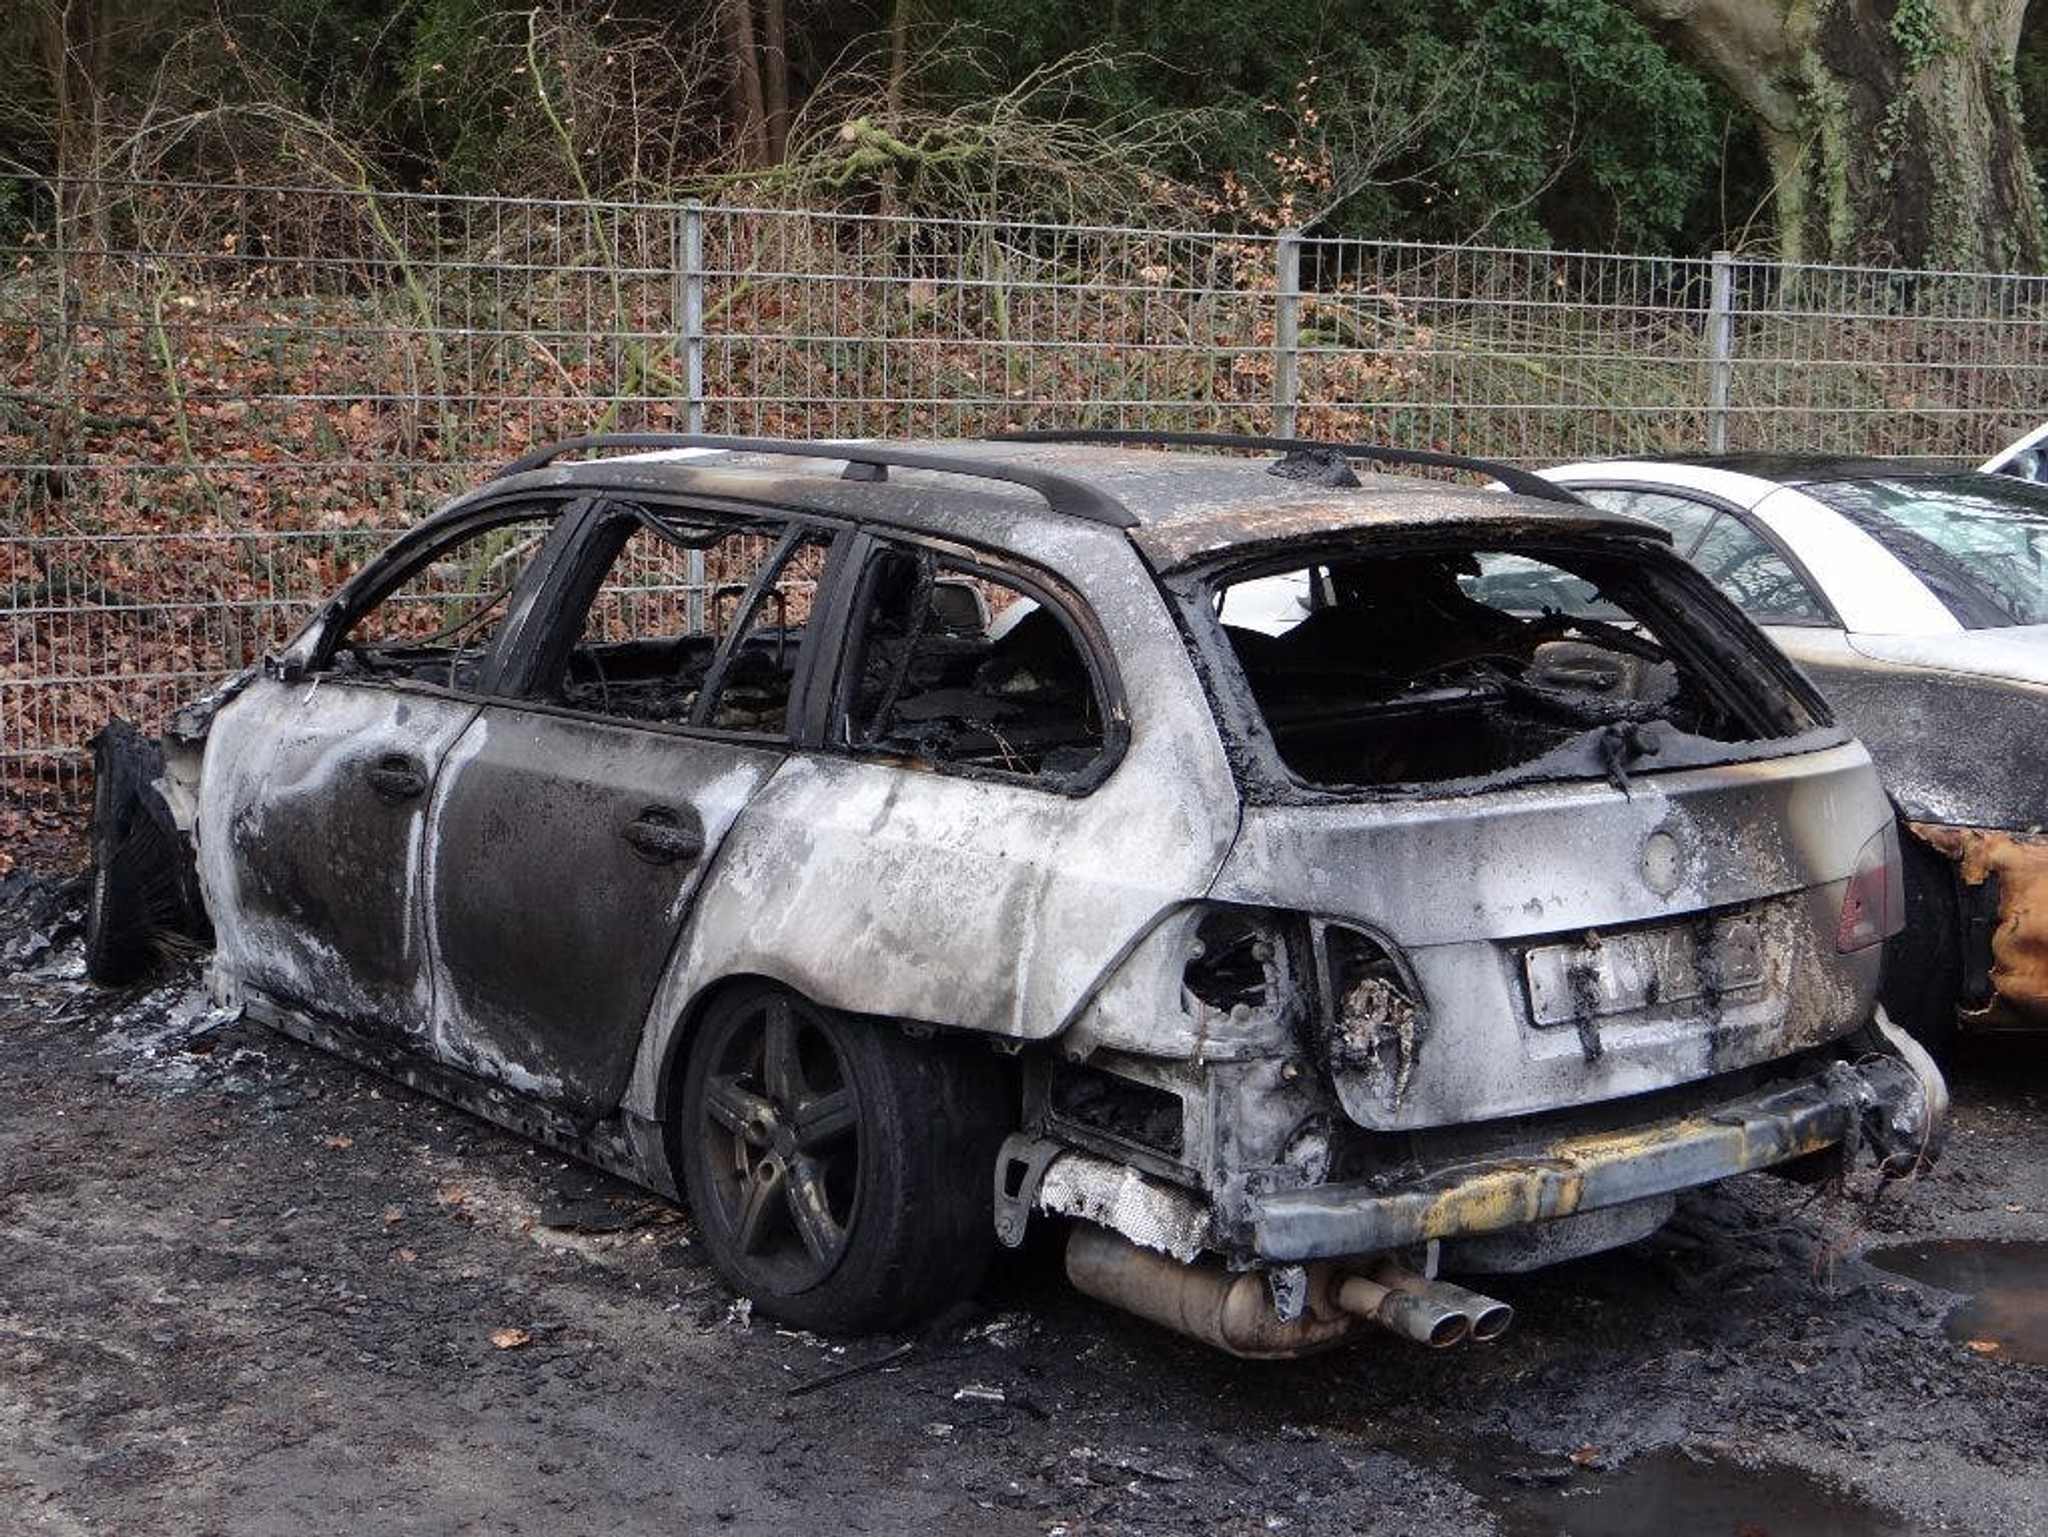 leégett autó, megrongálódott autó, jármű tűz után, kigyulladt autó